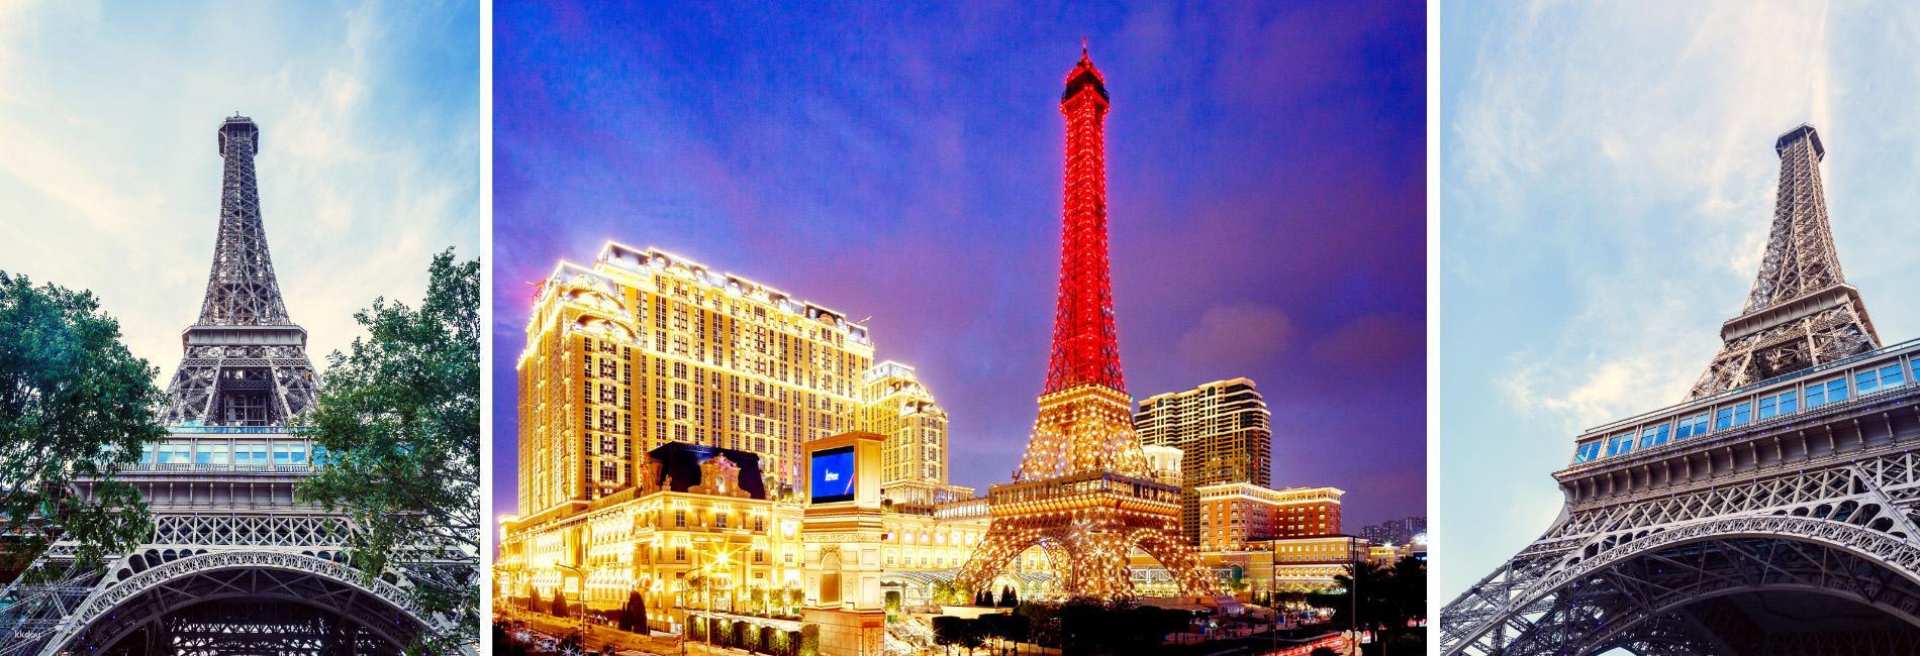 澳門-巴黎人鐵塔37樓觀景台門票| 澳門巴黎鐵塔